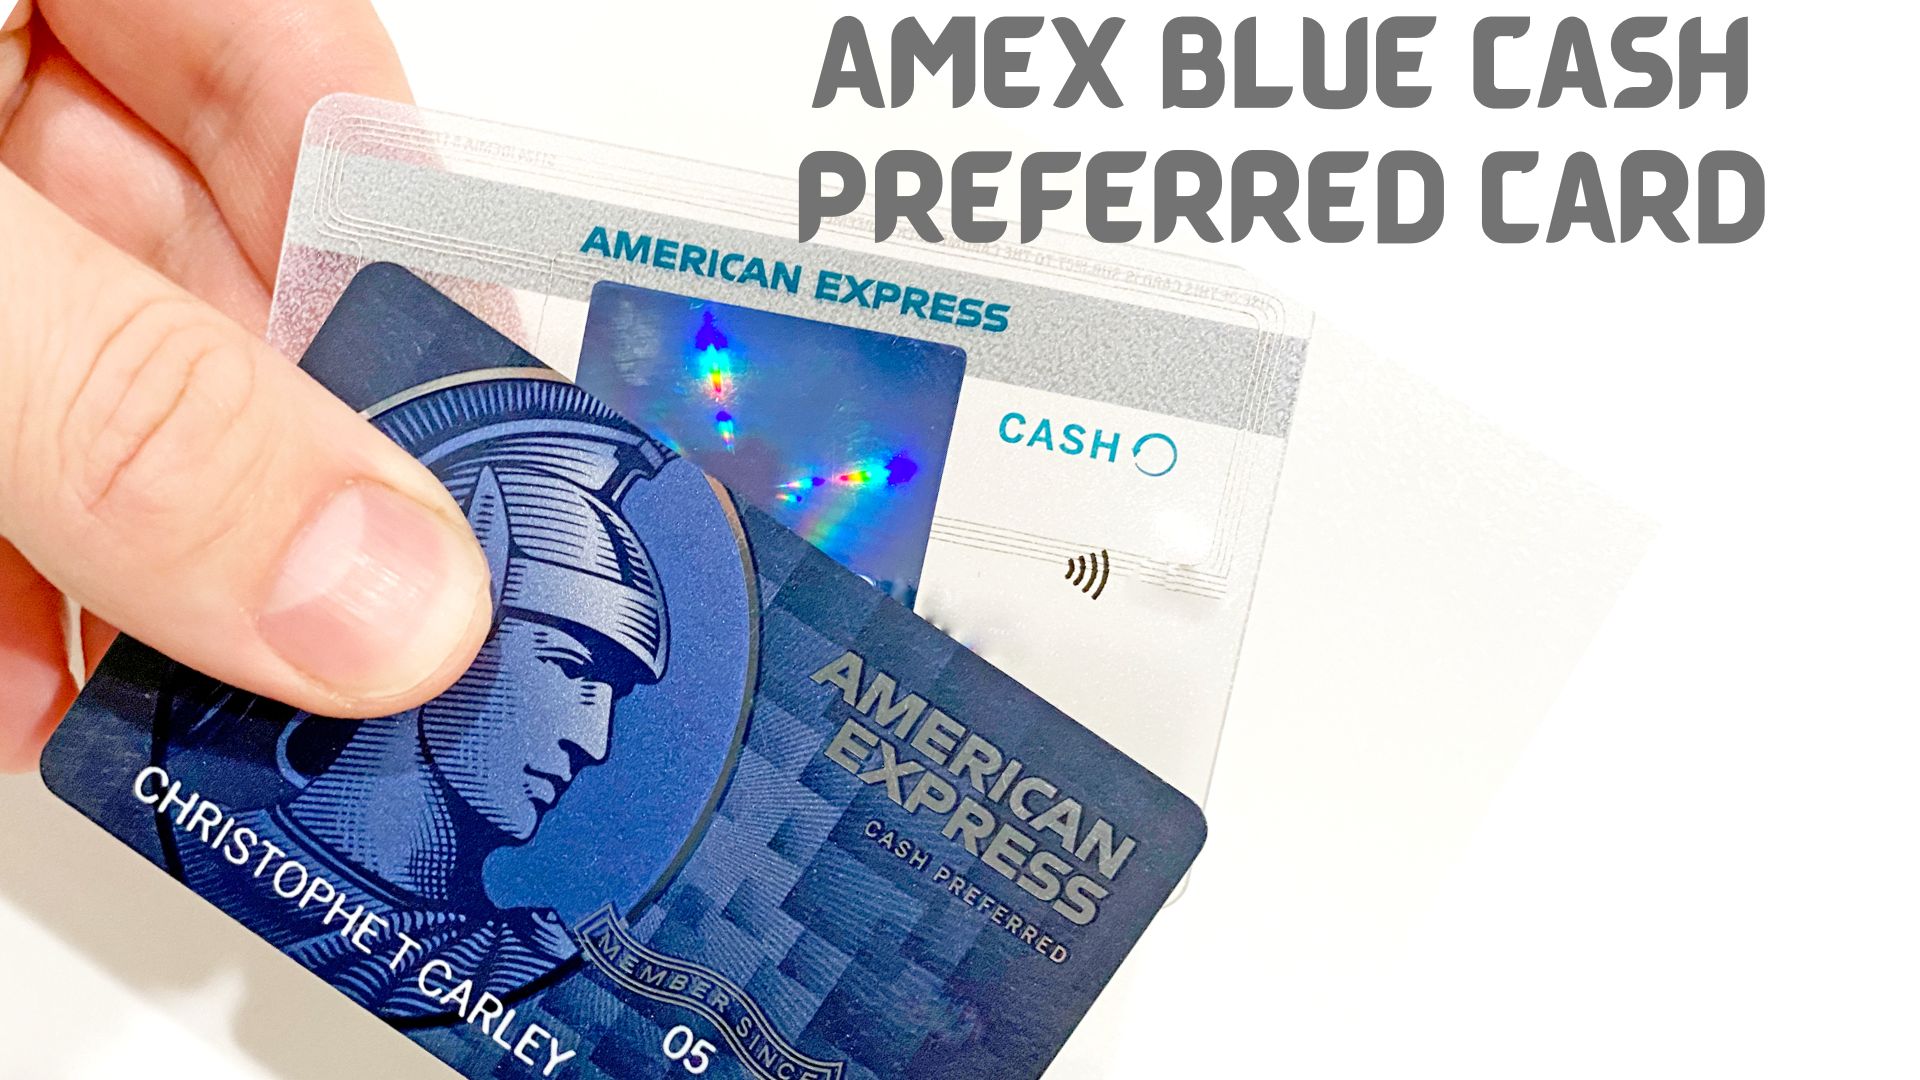 AmEx Blue Cash Preferred